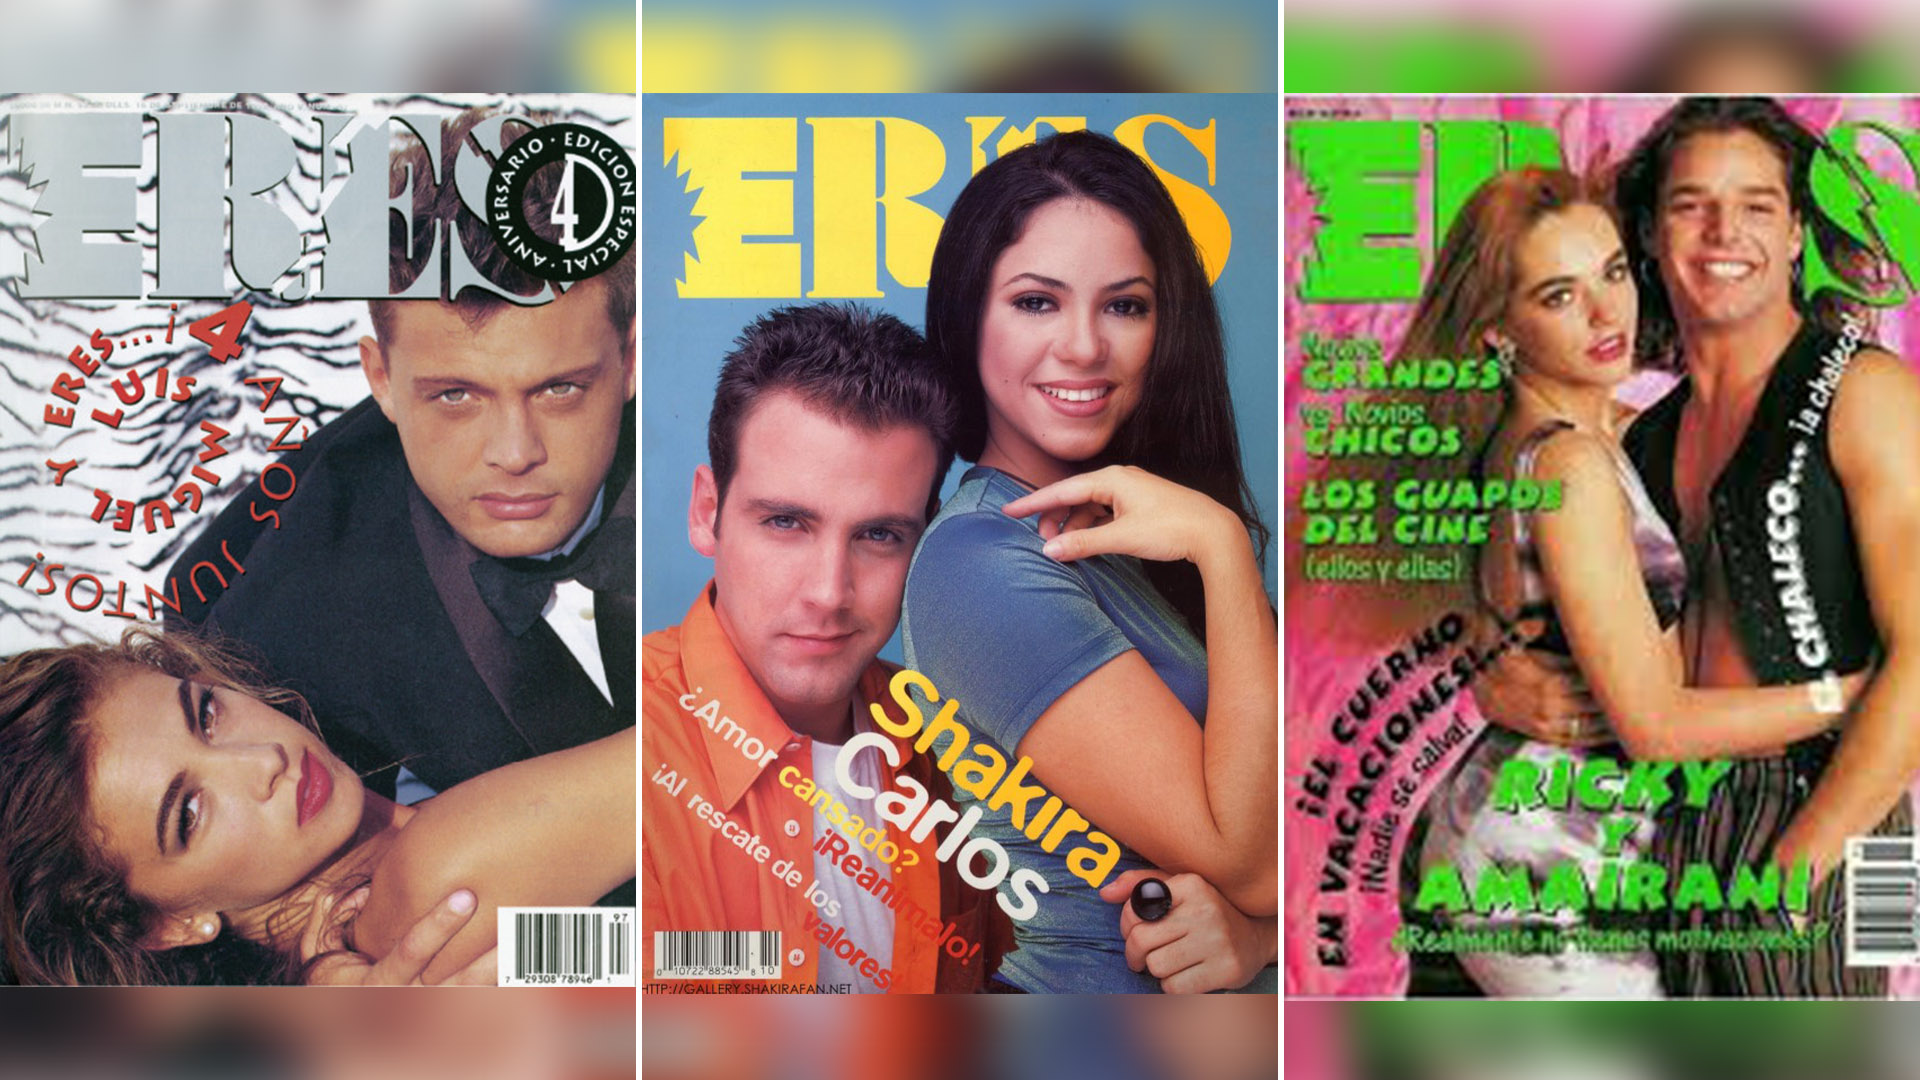 Eres fue la revista más importante de farándula para jóvenes en su momento, siendo referente para otras publicaciones que surgieron después (Editorial Televisa/Grupo Televisa)